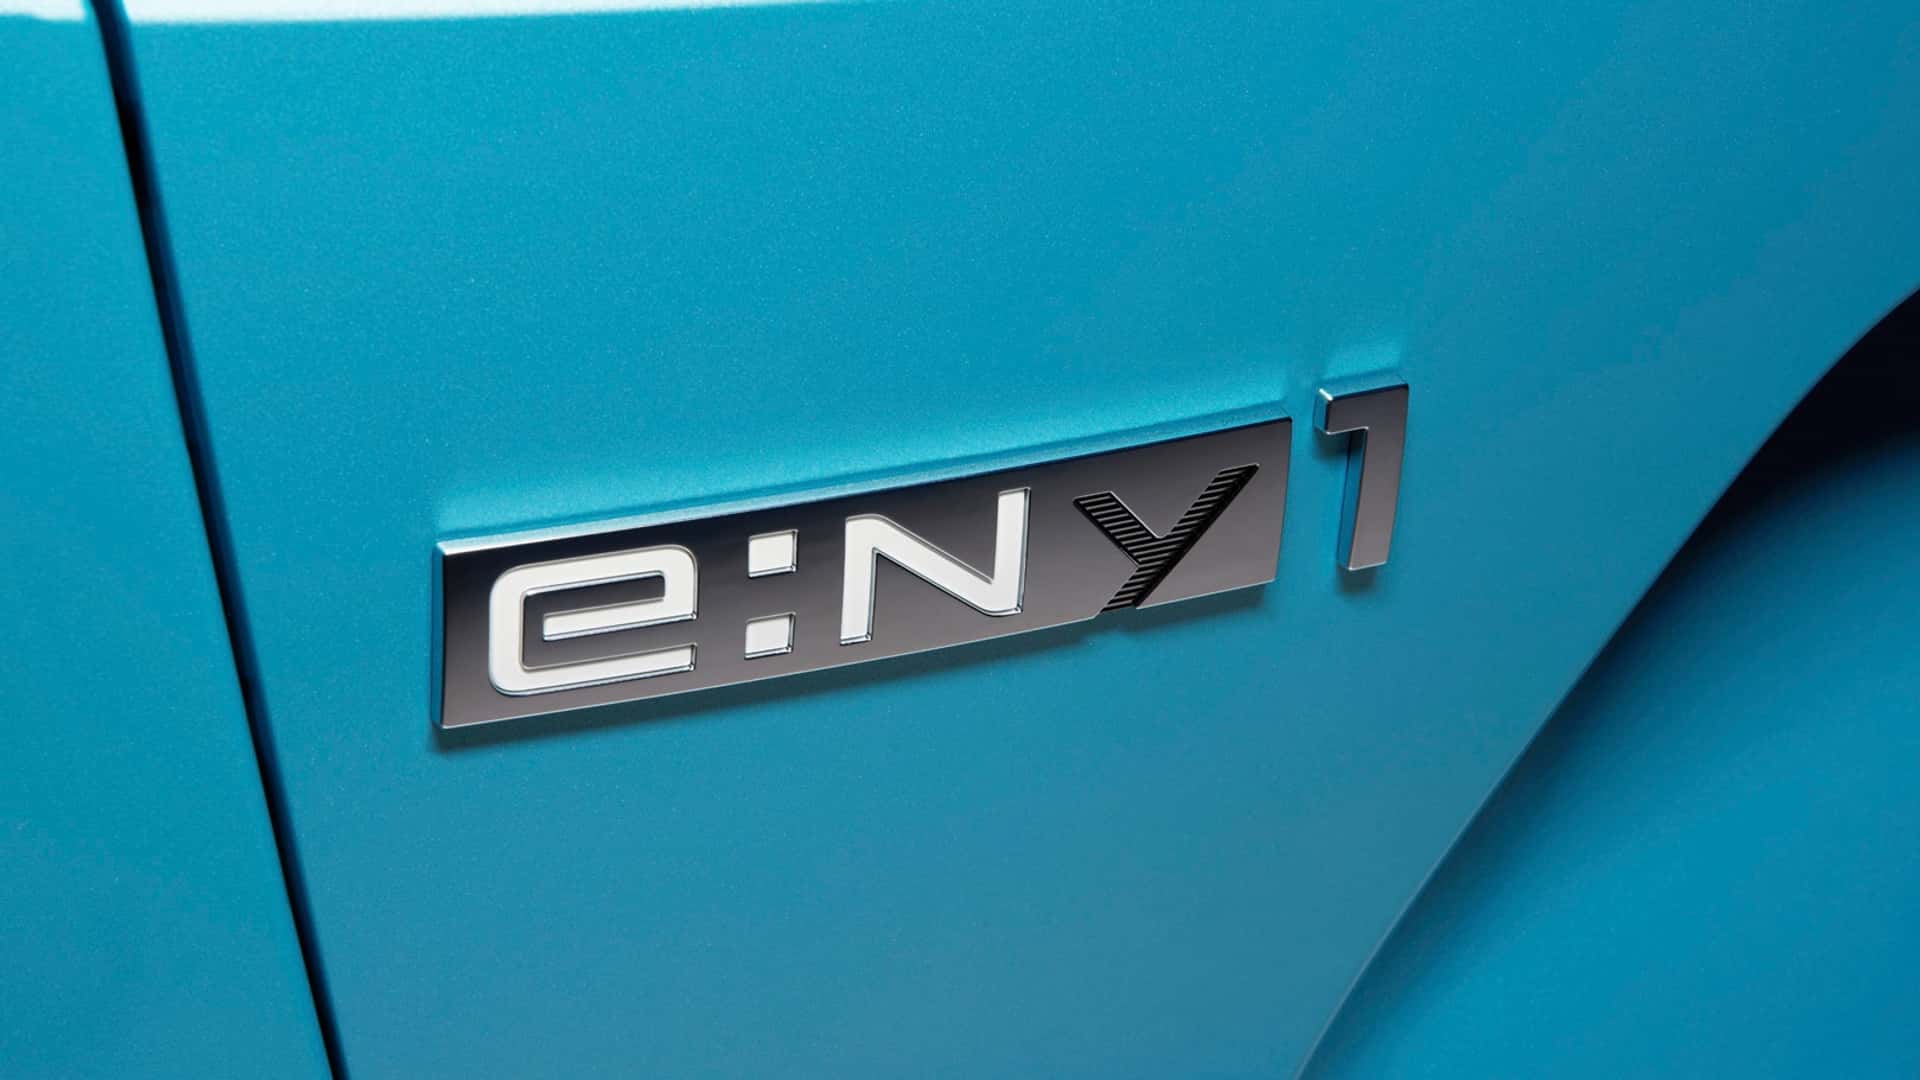 2023 Honda e:Ny1